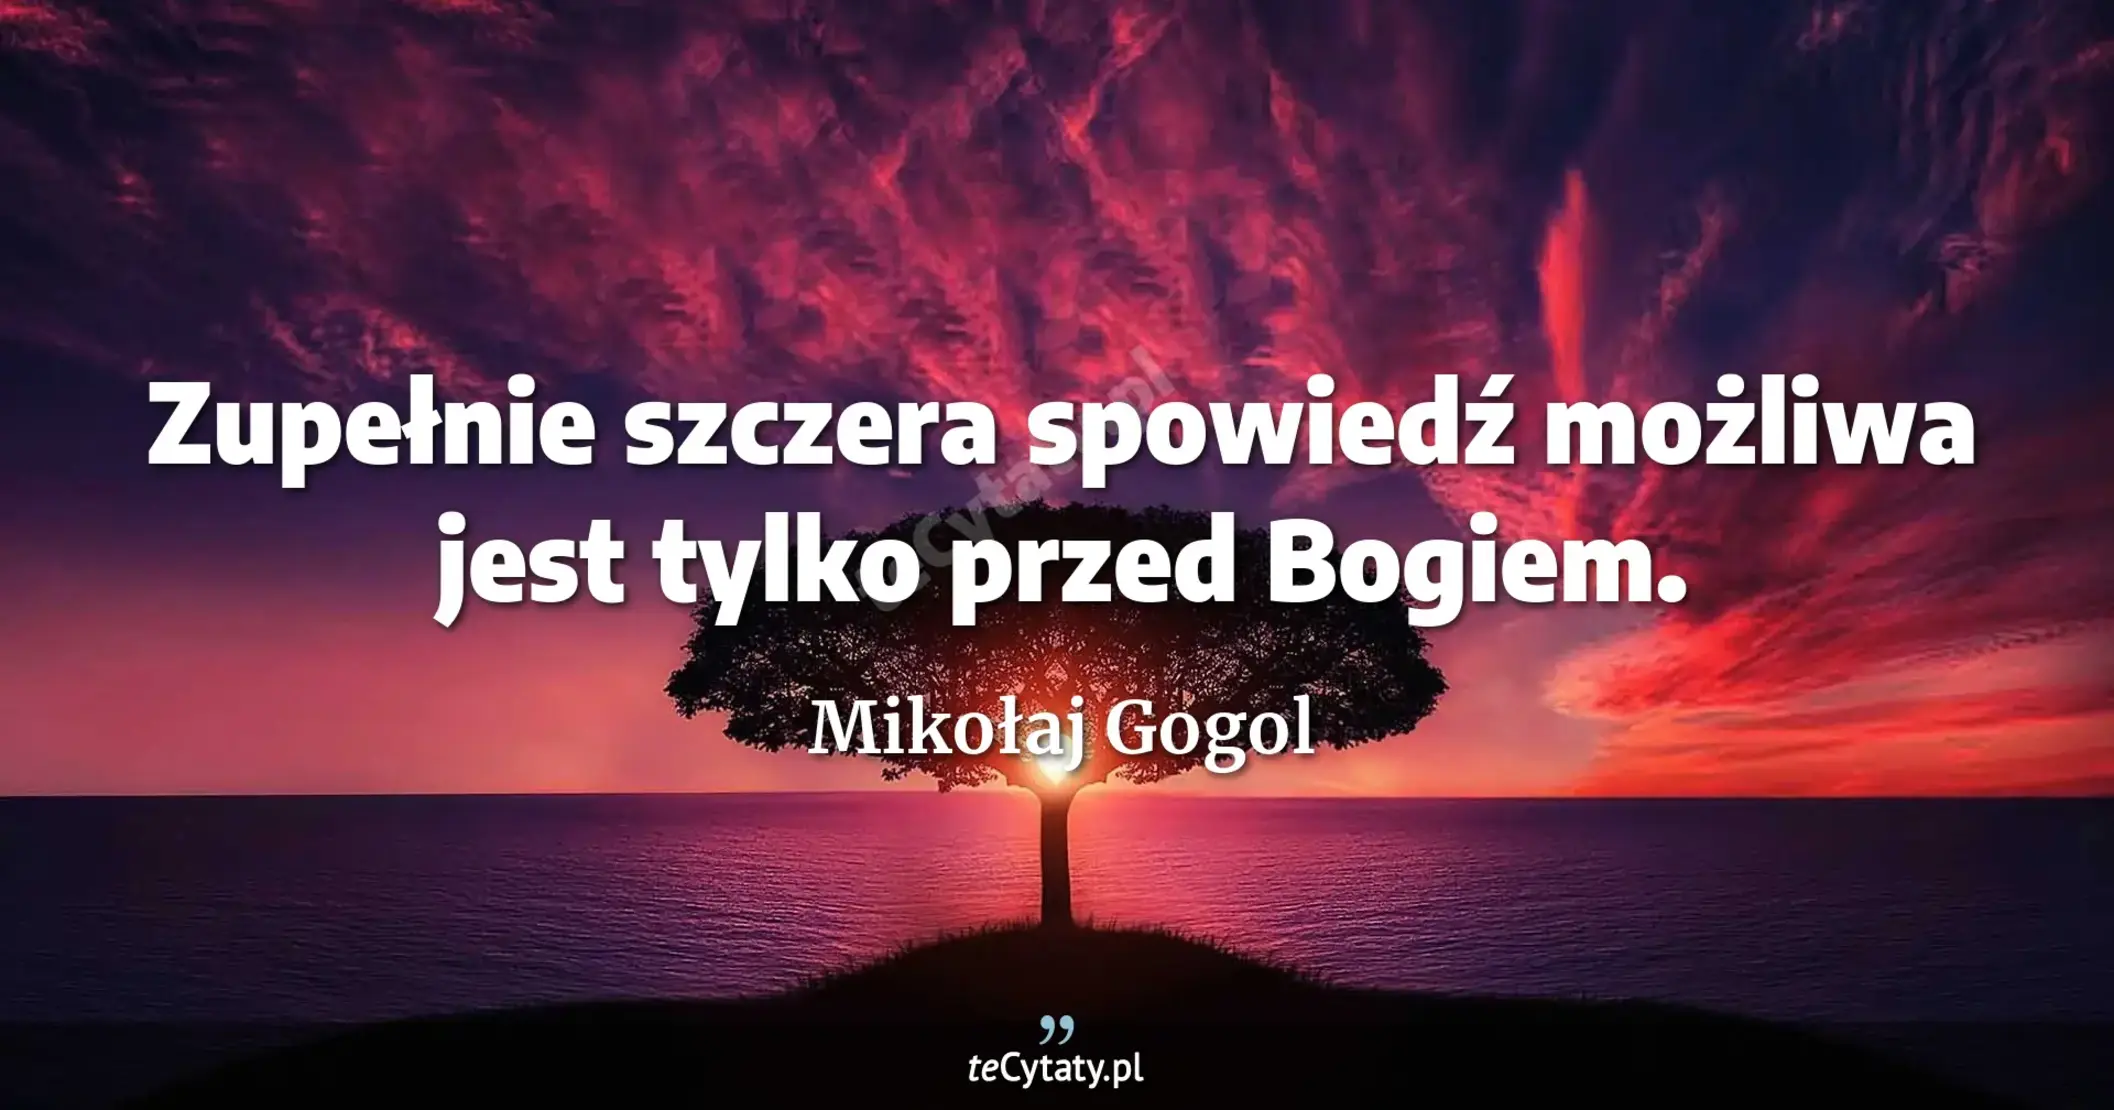 Zupełnie szczera spowiedź możliwa jest tylko przed Bogiem. - Mikołaj Gogol